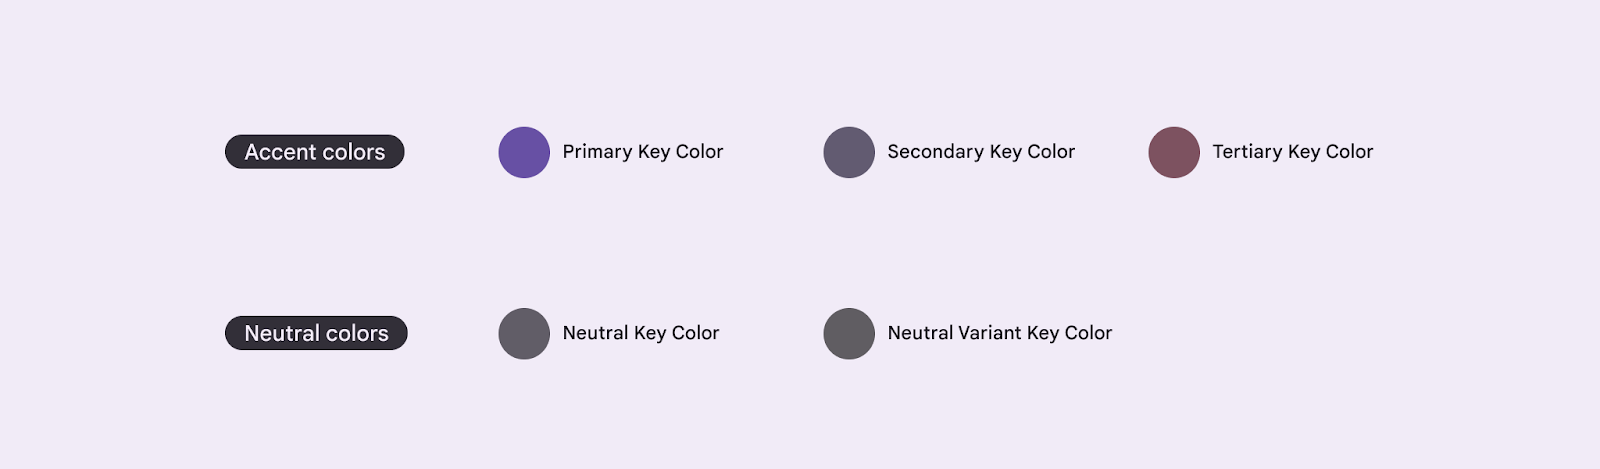 Cinco colores clave del modelo de referencia para crear un tema en M3.